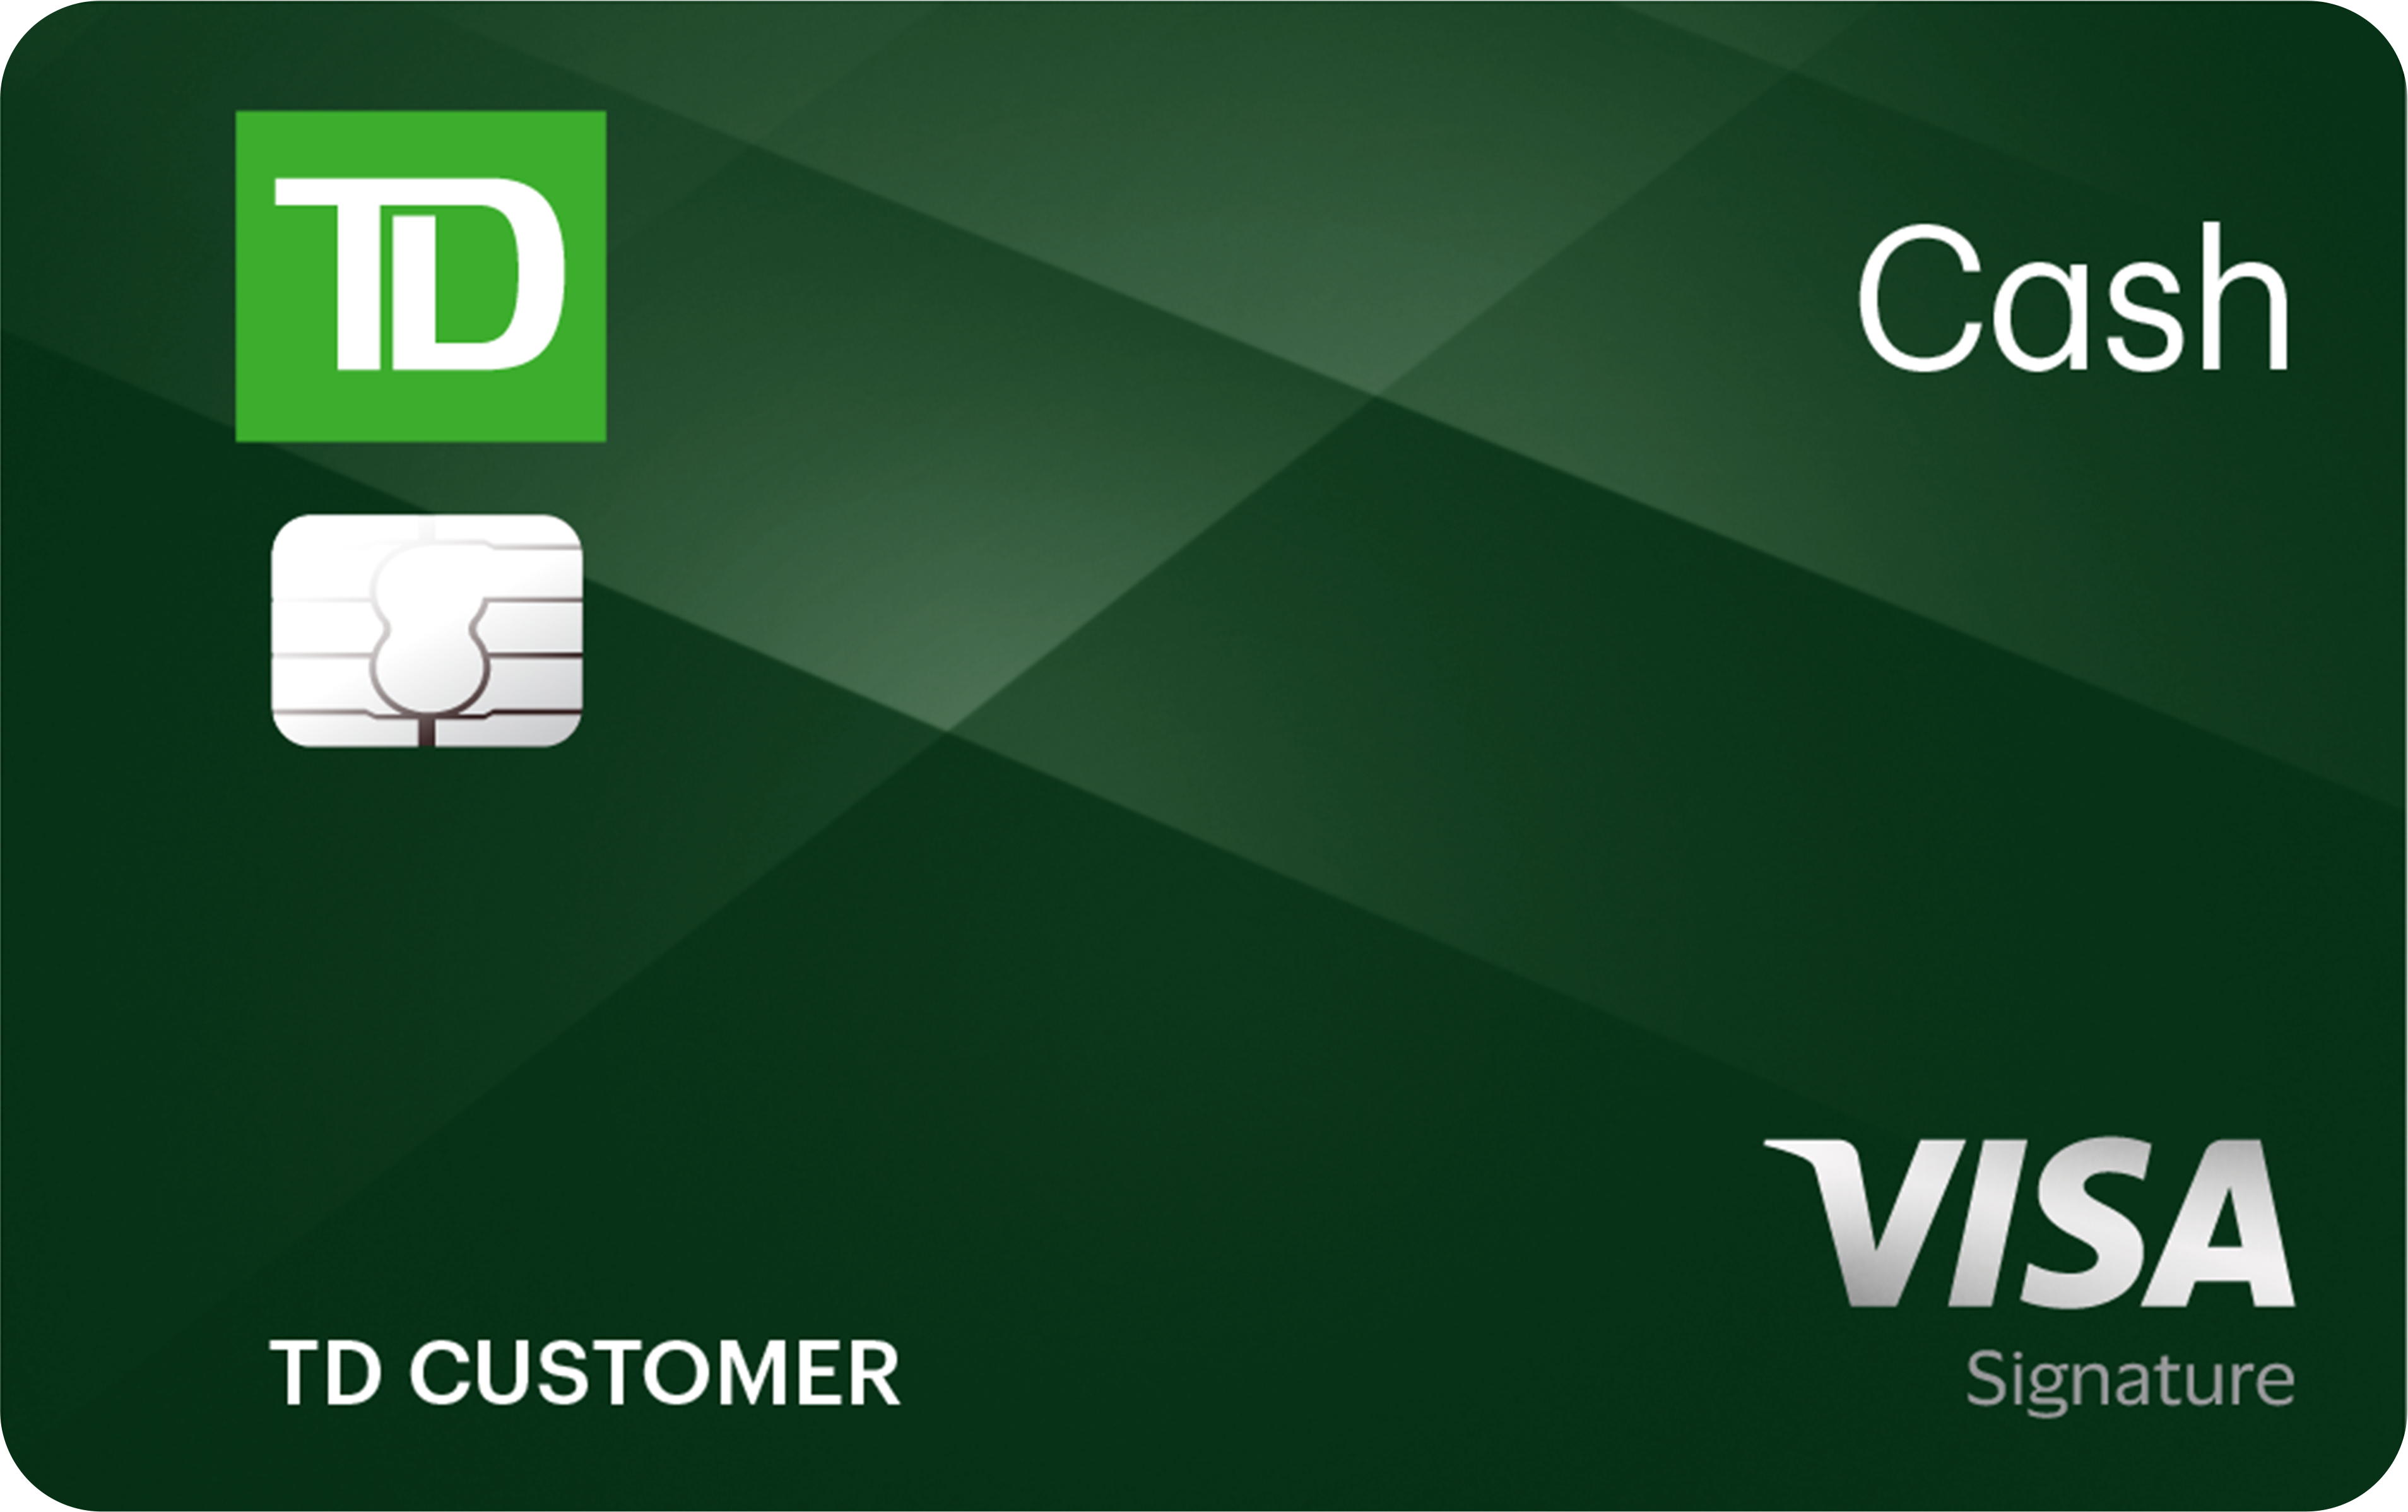 TD Cash Credit Card Image